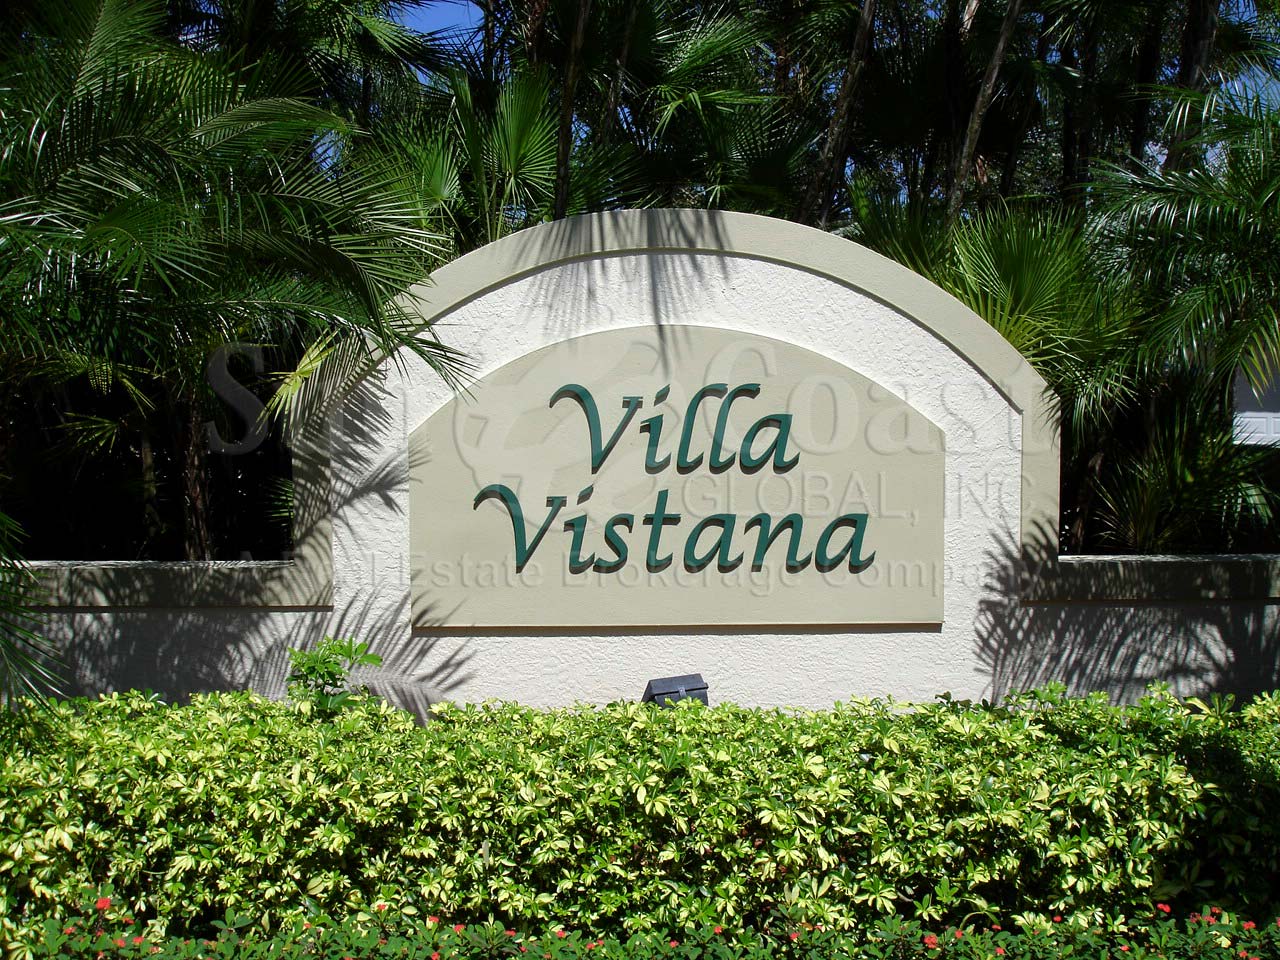 Villa Vistana signage